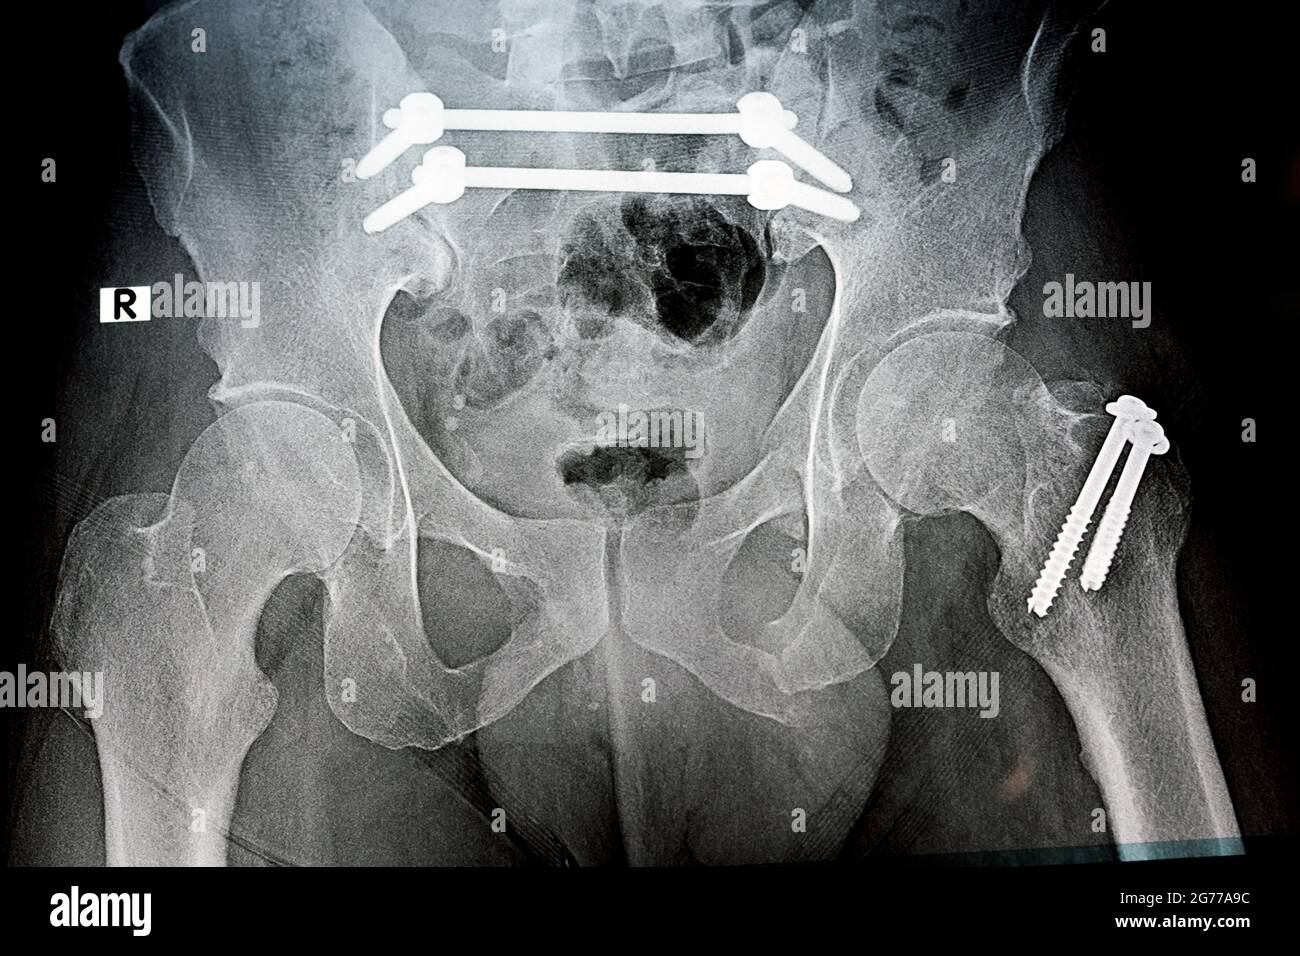 Radiografia piana con una pelvi da frattura fissata con 4 viti e 2 aste e frattura di un grande trocantere del femore fissato con 2 viti Foto Stock